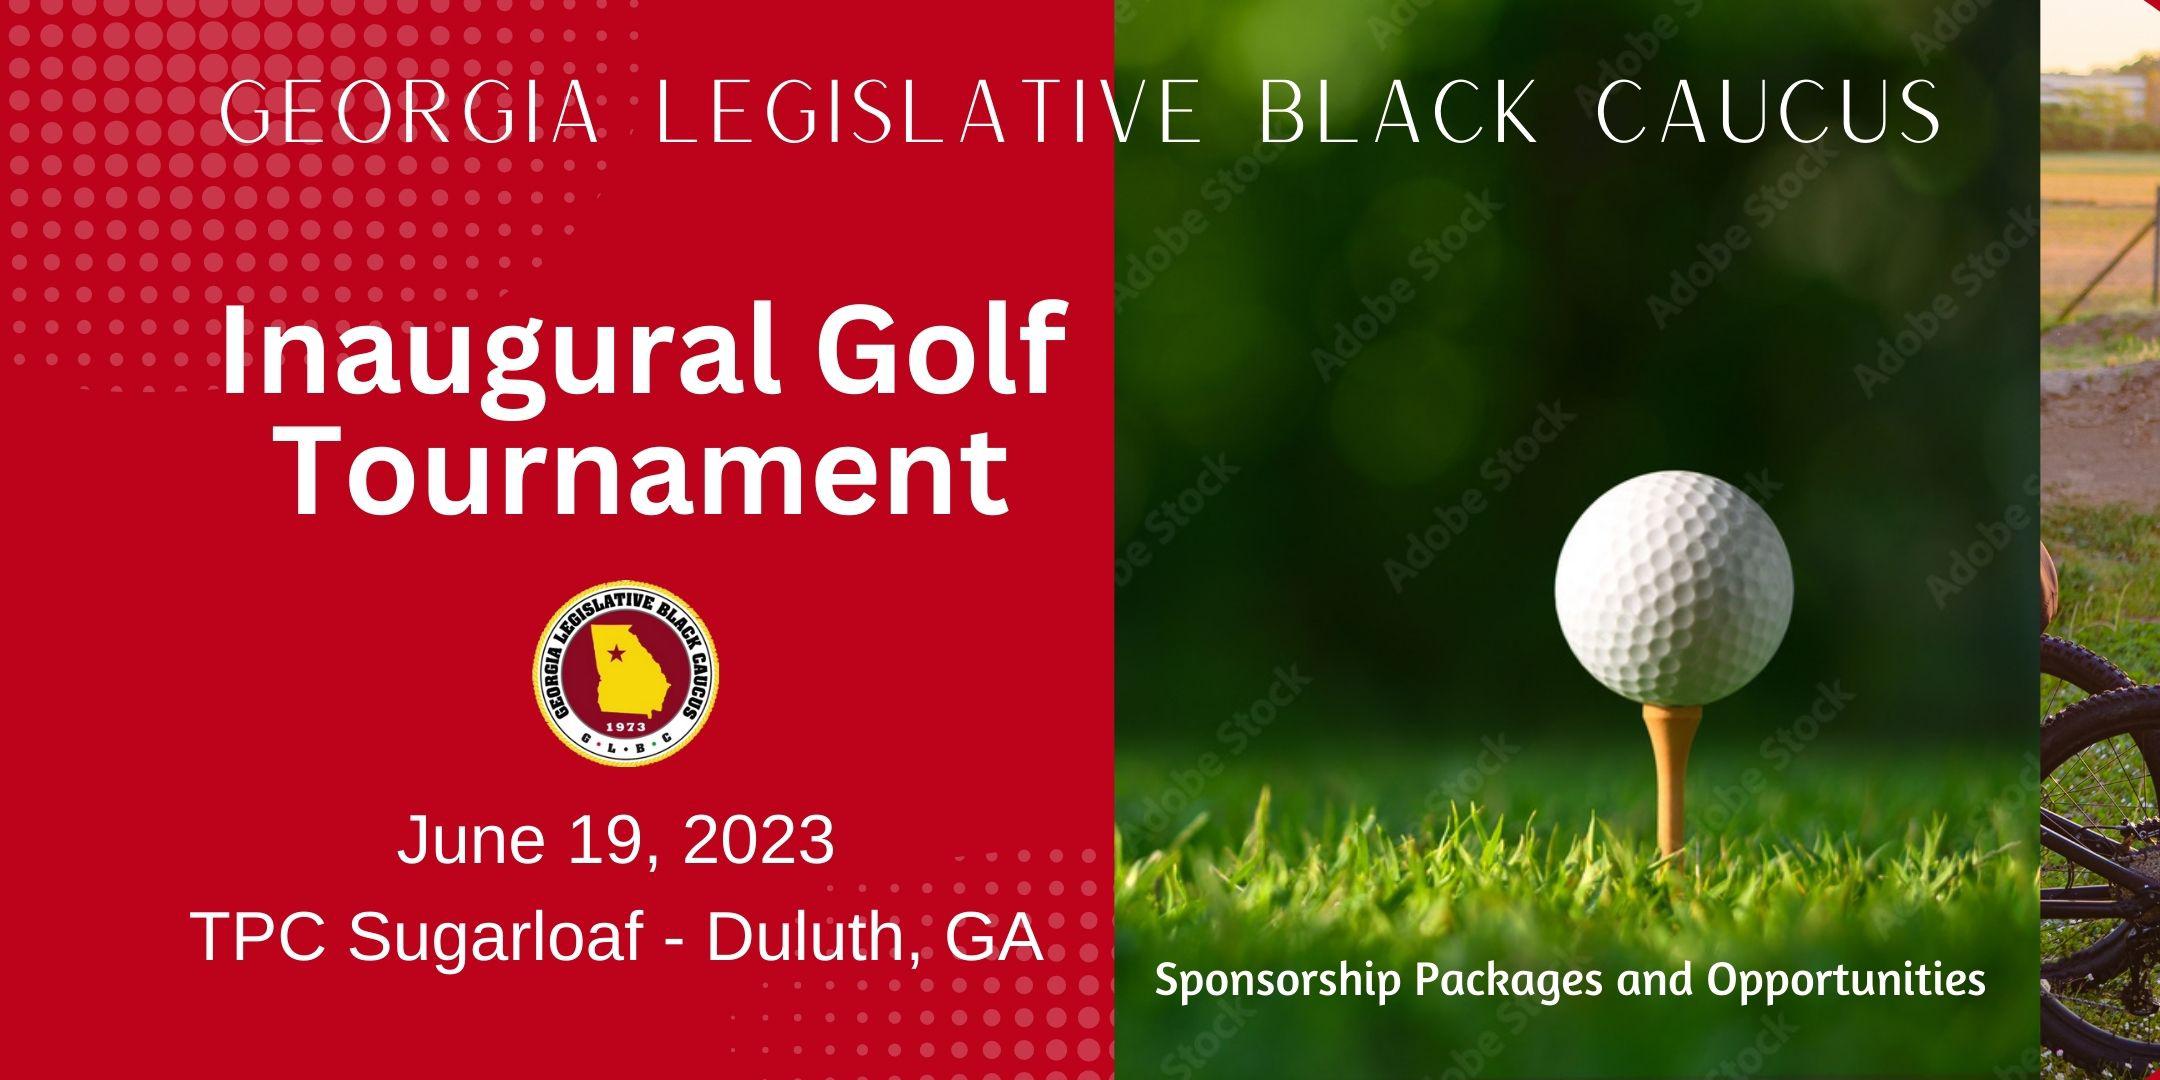 GLBC Inaugural Golf Tournament